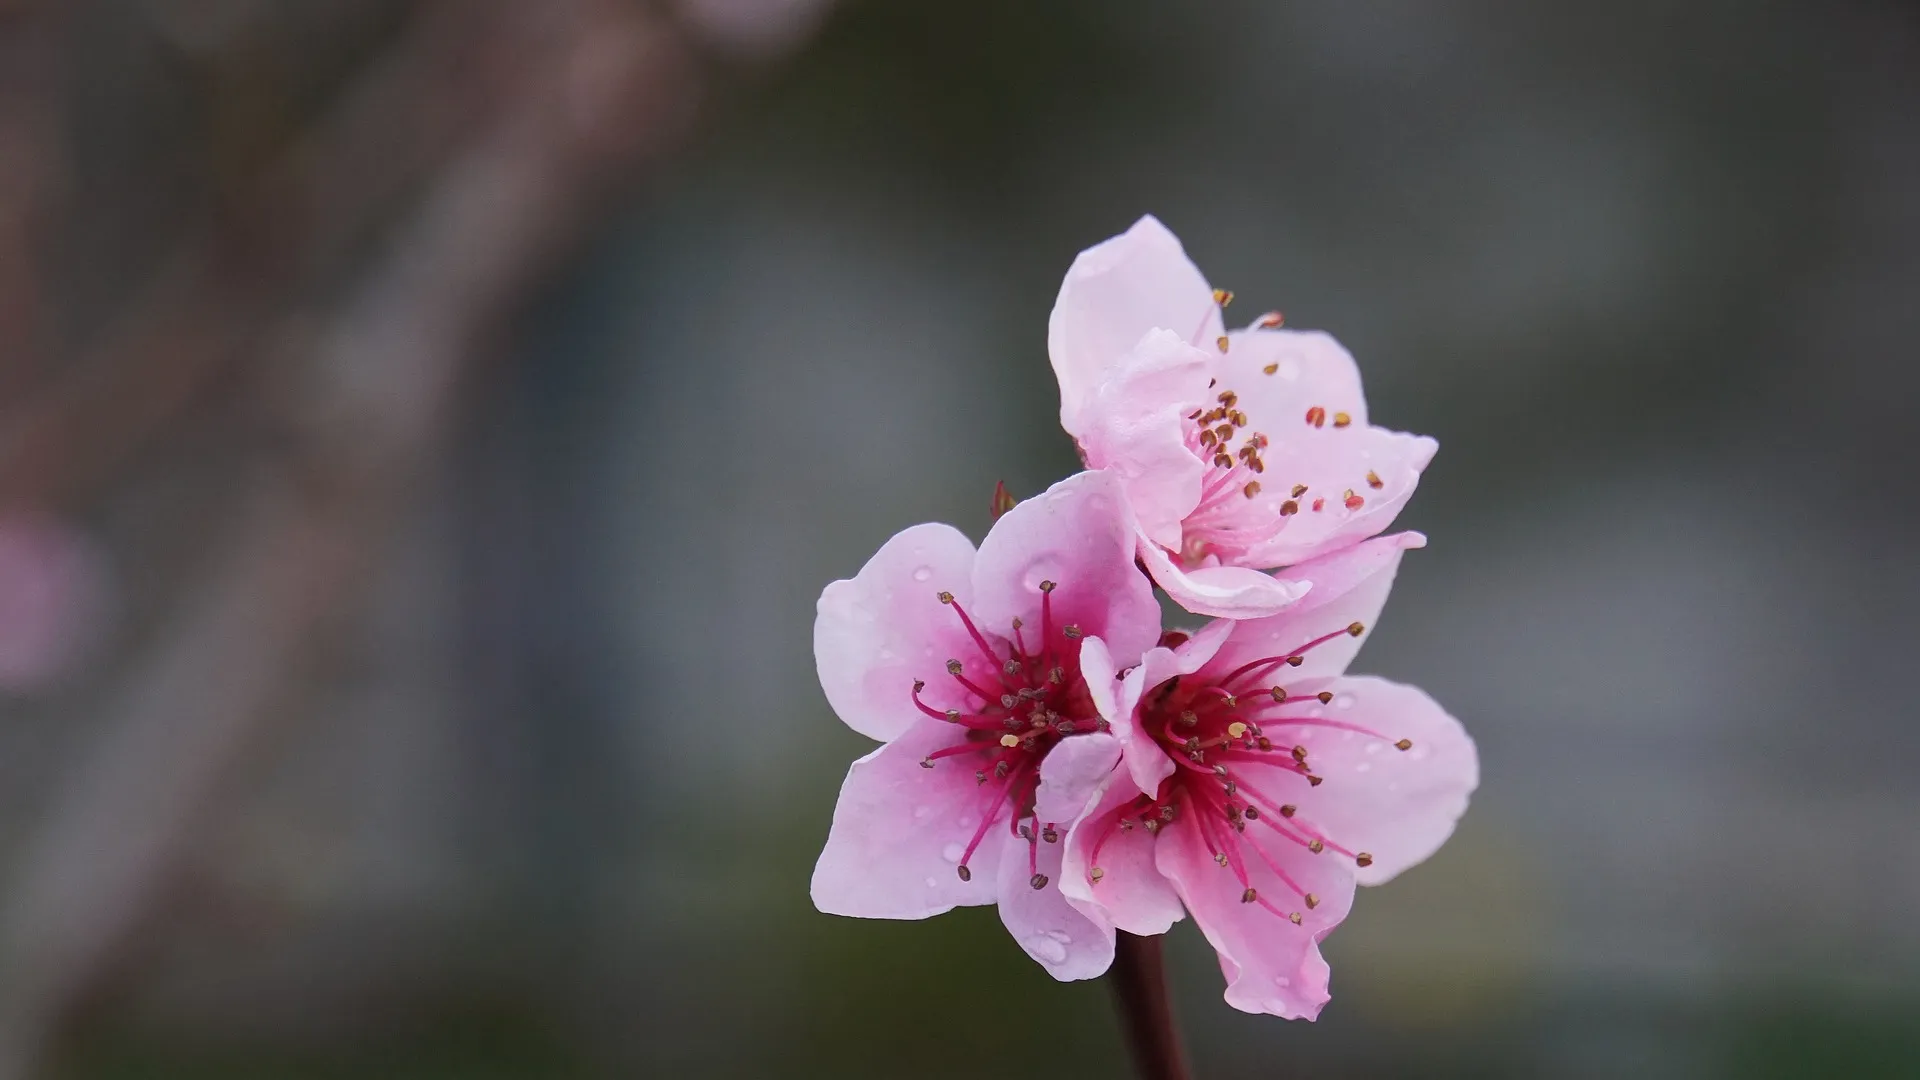 梅と桜の間に咲く桃の花。桃は、日本の花暦（はなごよみ）では、菜の花とともに3月を代表する花